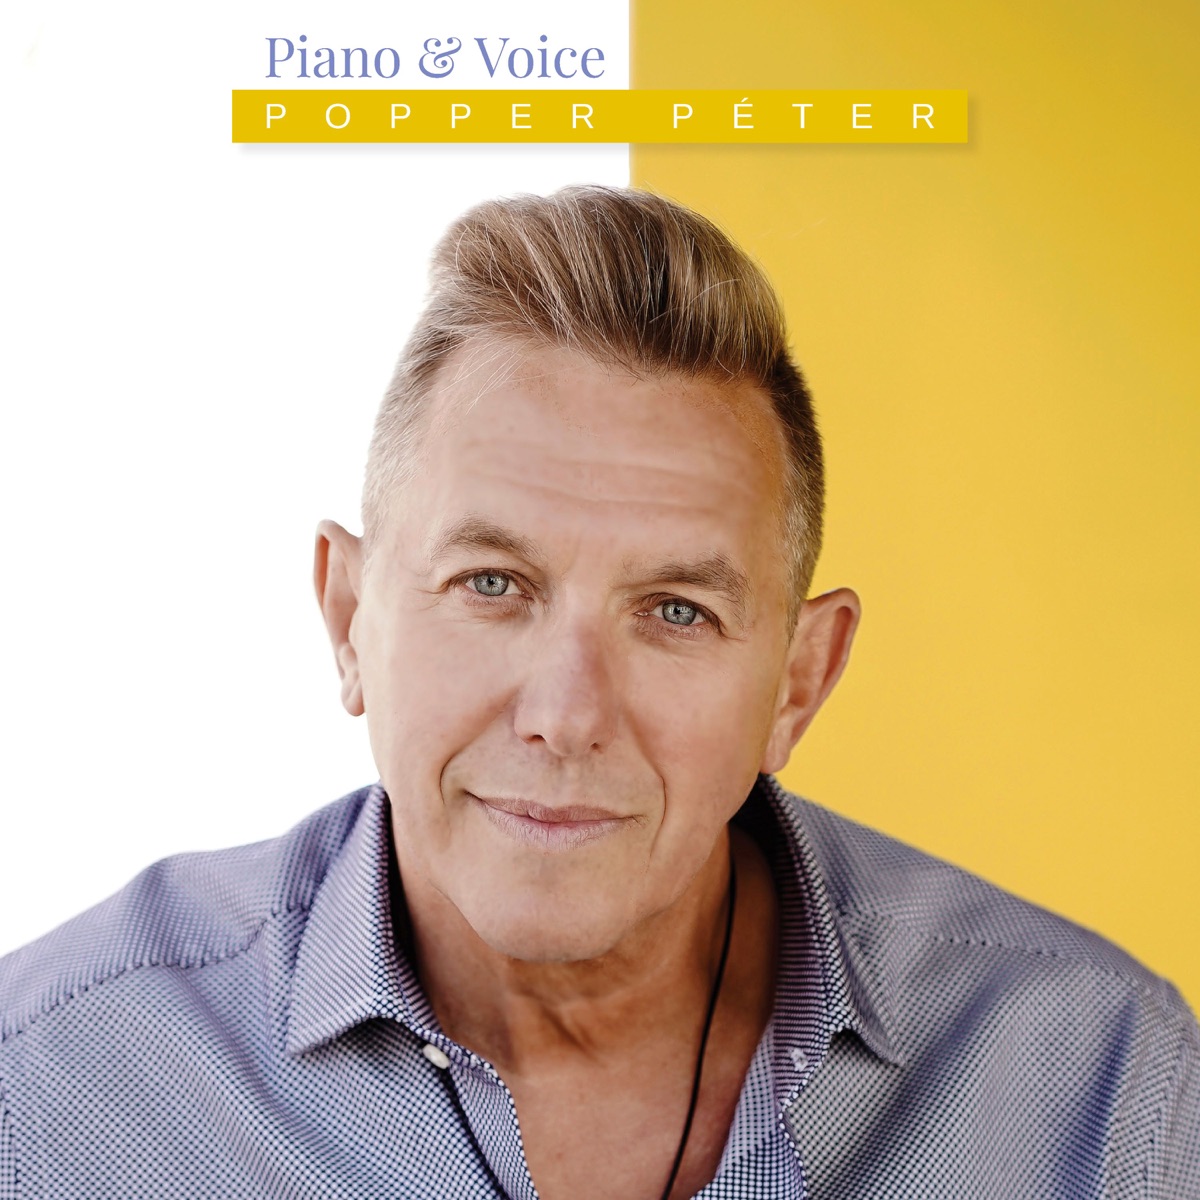 Piano & Voice par Popper Péter sur Apple Music